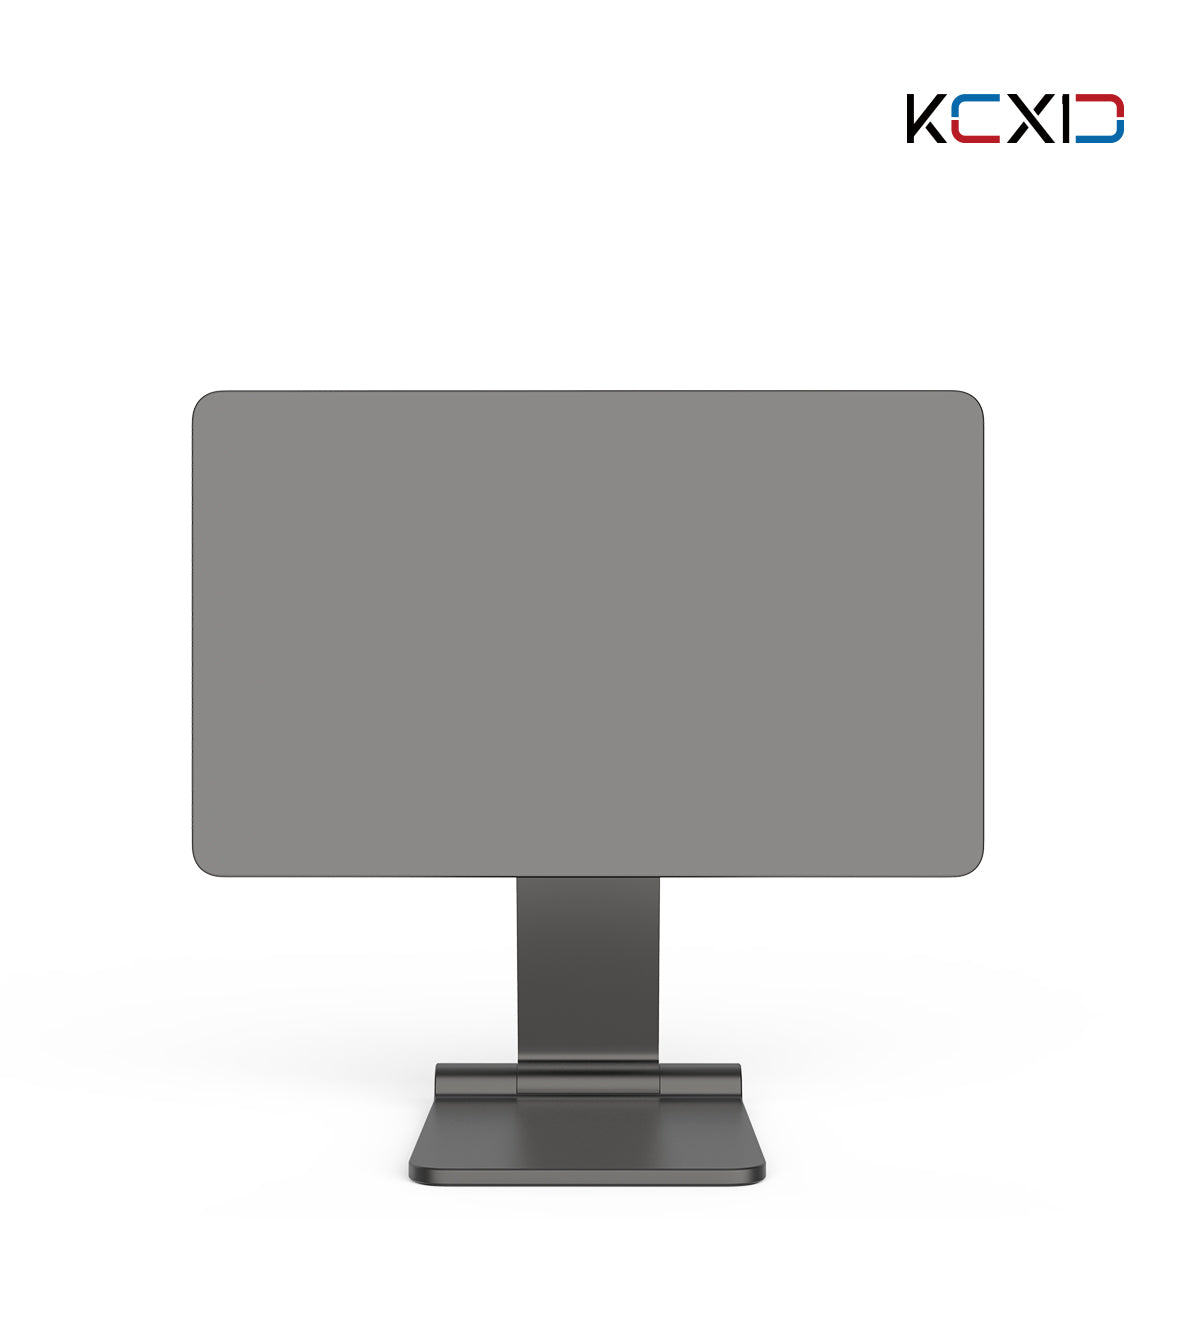 Supporto pieghevole magnetico per iPad KUXIU X33